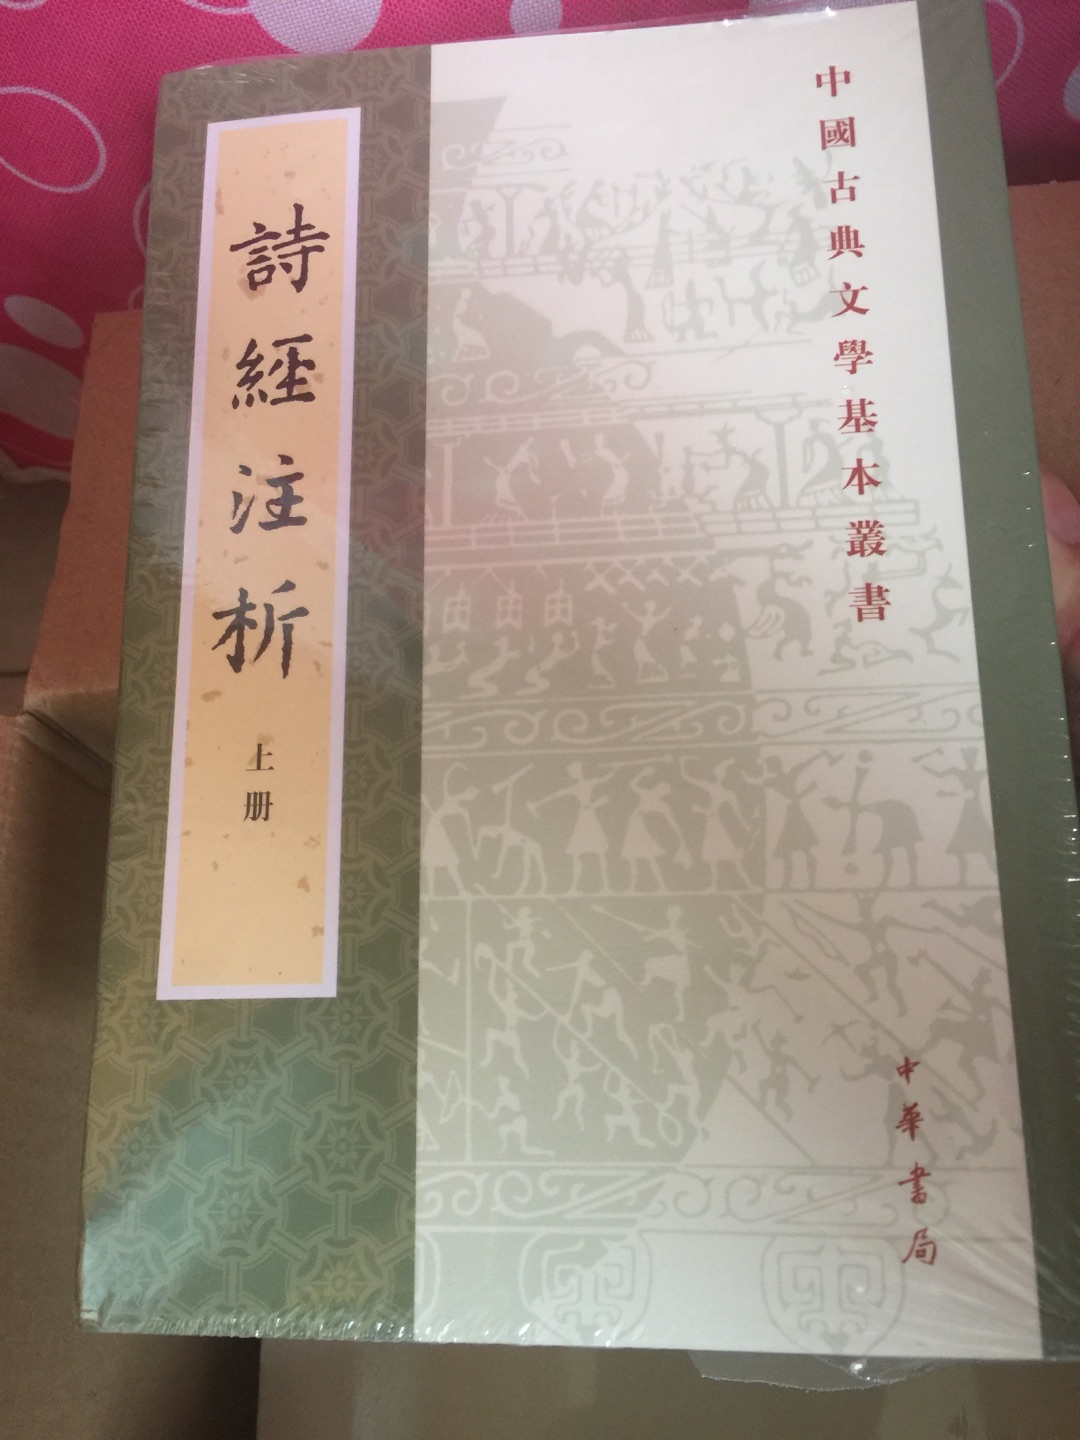 诗经这部书非常经典，中华书局的这个系列的书都非常不错。